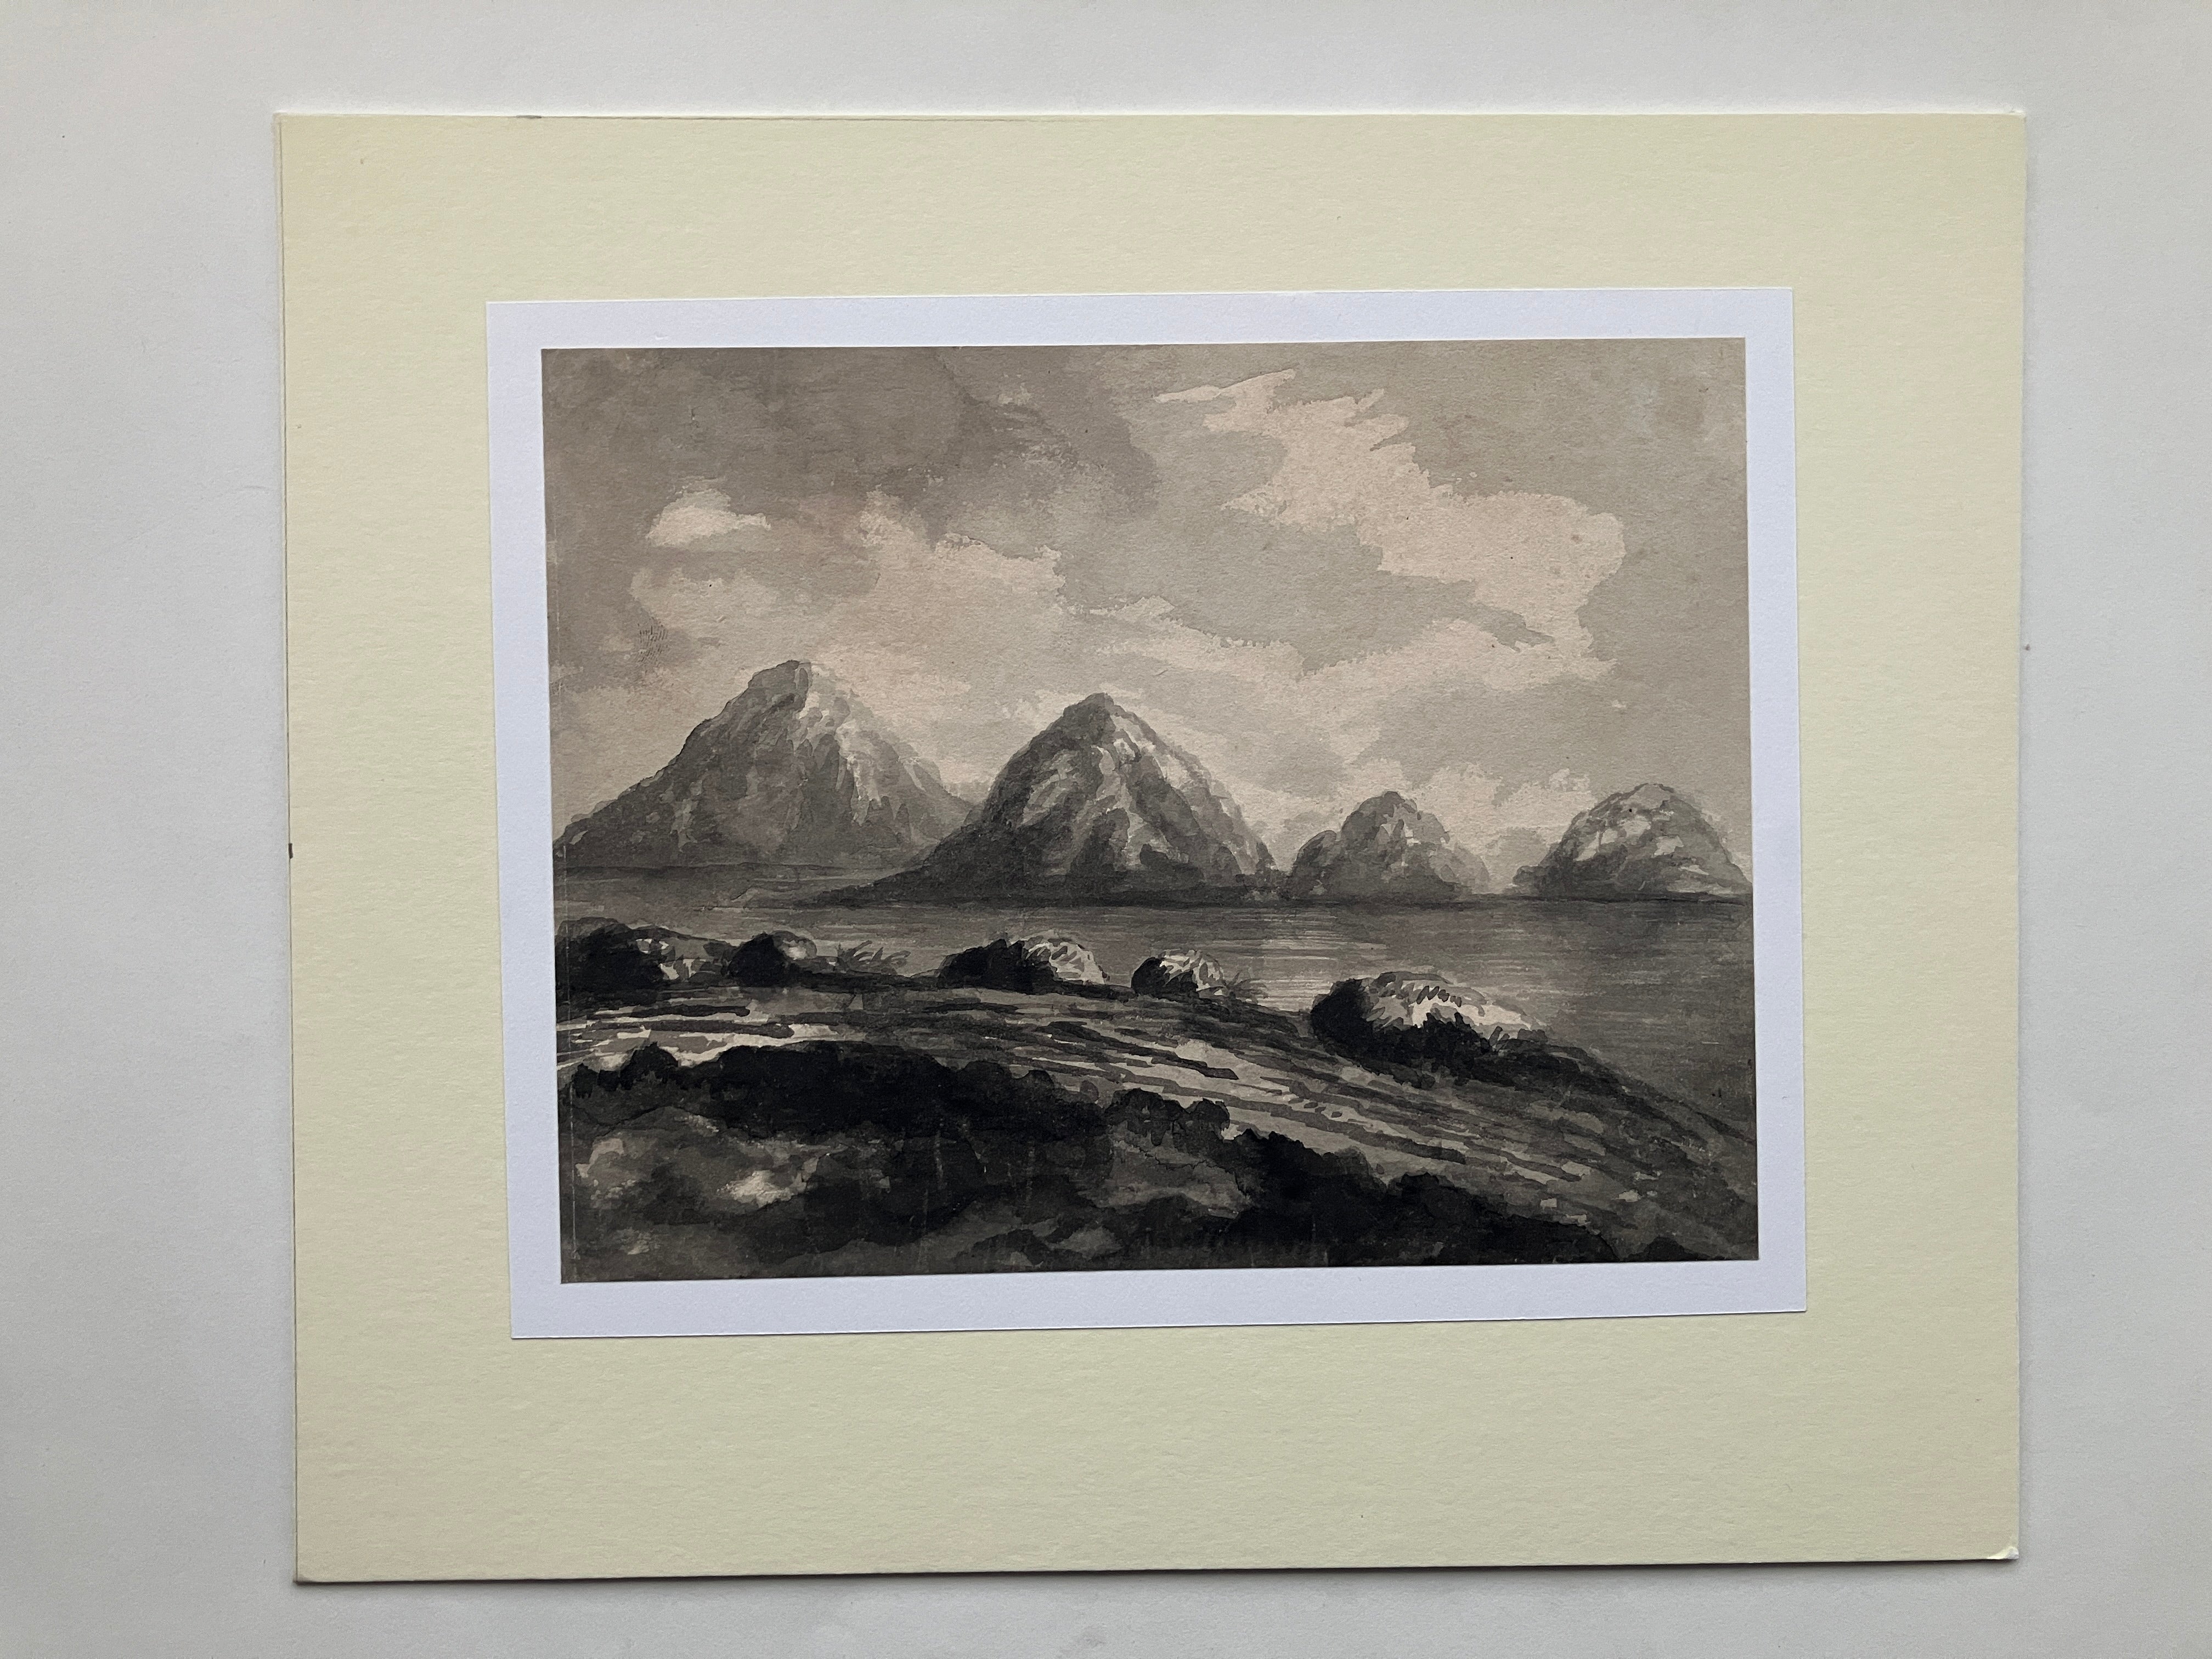 James Bourne circa 1820 – England hills by lake